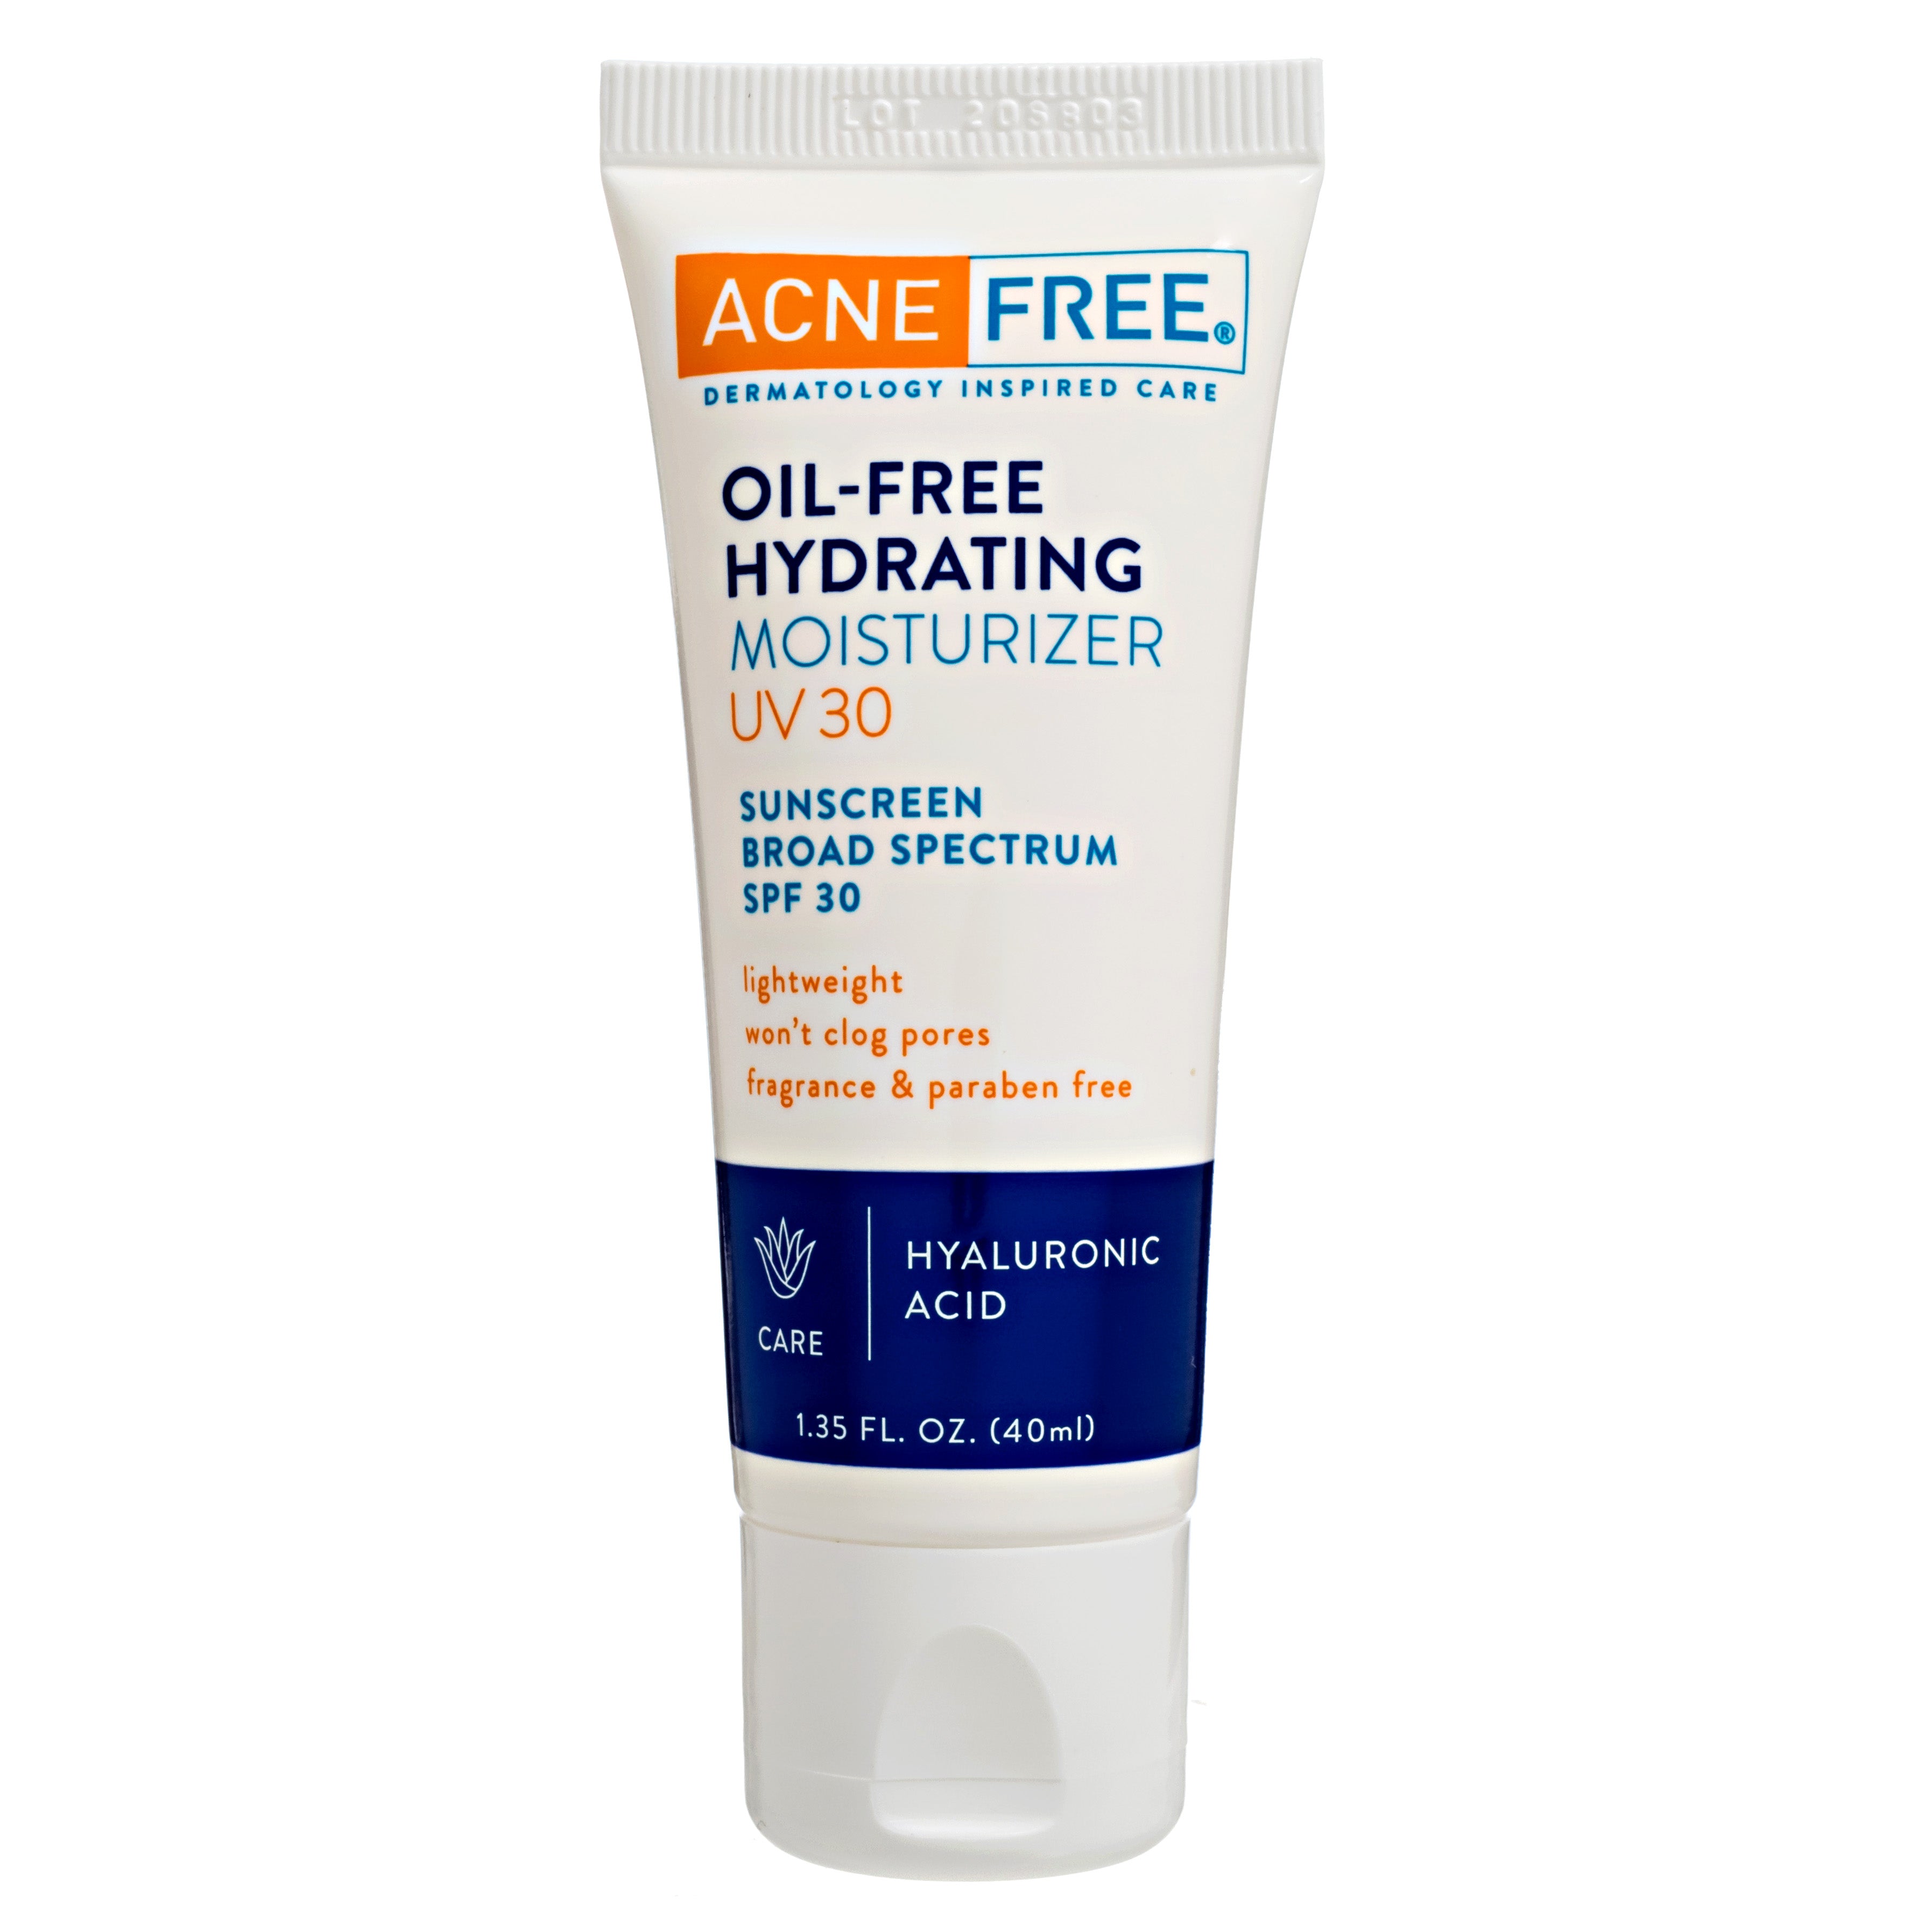 Rijpen voor de helft Gezamenlijke selectie AcneFree Oil-Free Hydrating Moisturizer UV 30 - AcneFree Dermatology  Inspired Care